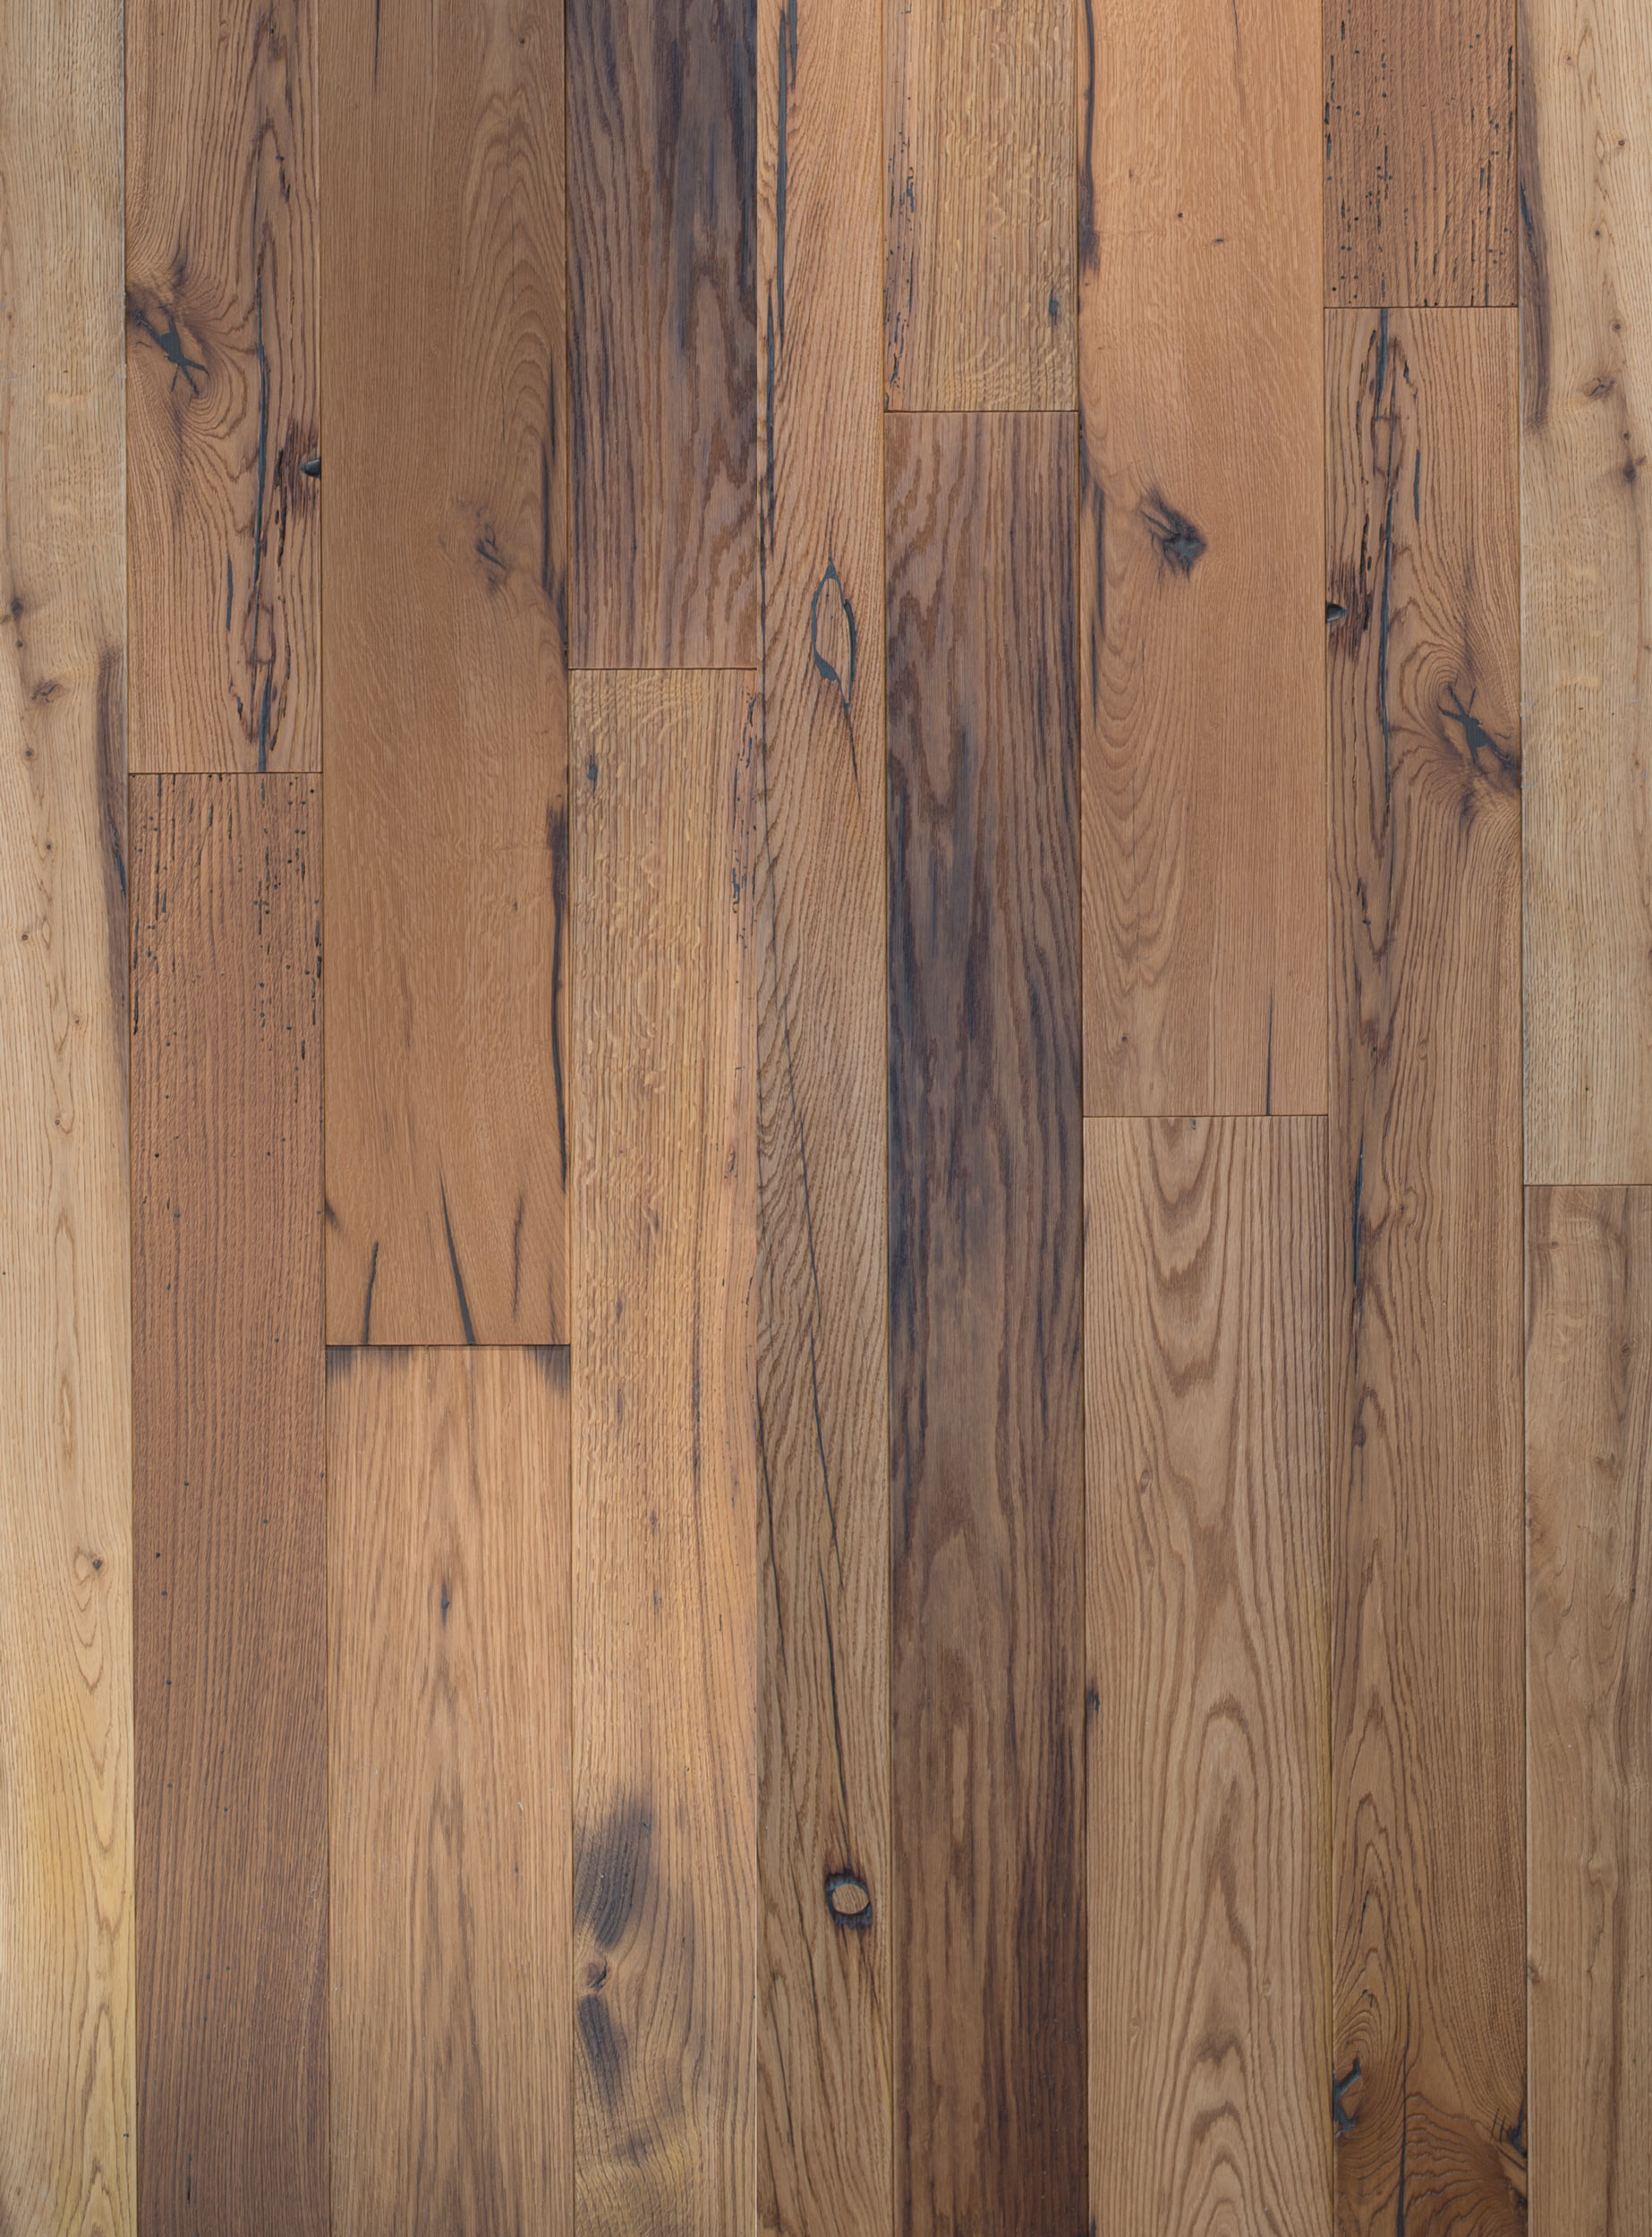 Reclaimed Italian Oak, Reclaimed Laminate Flooring Uk